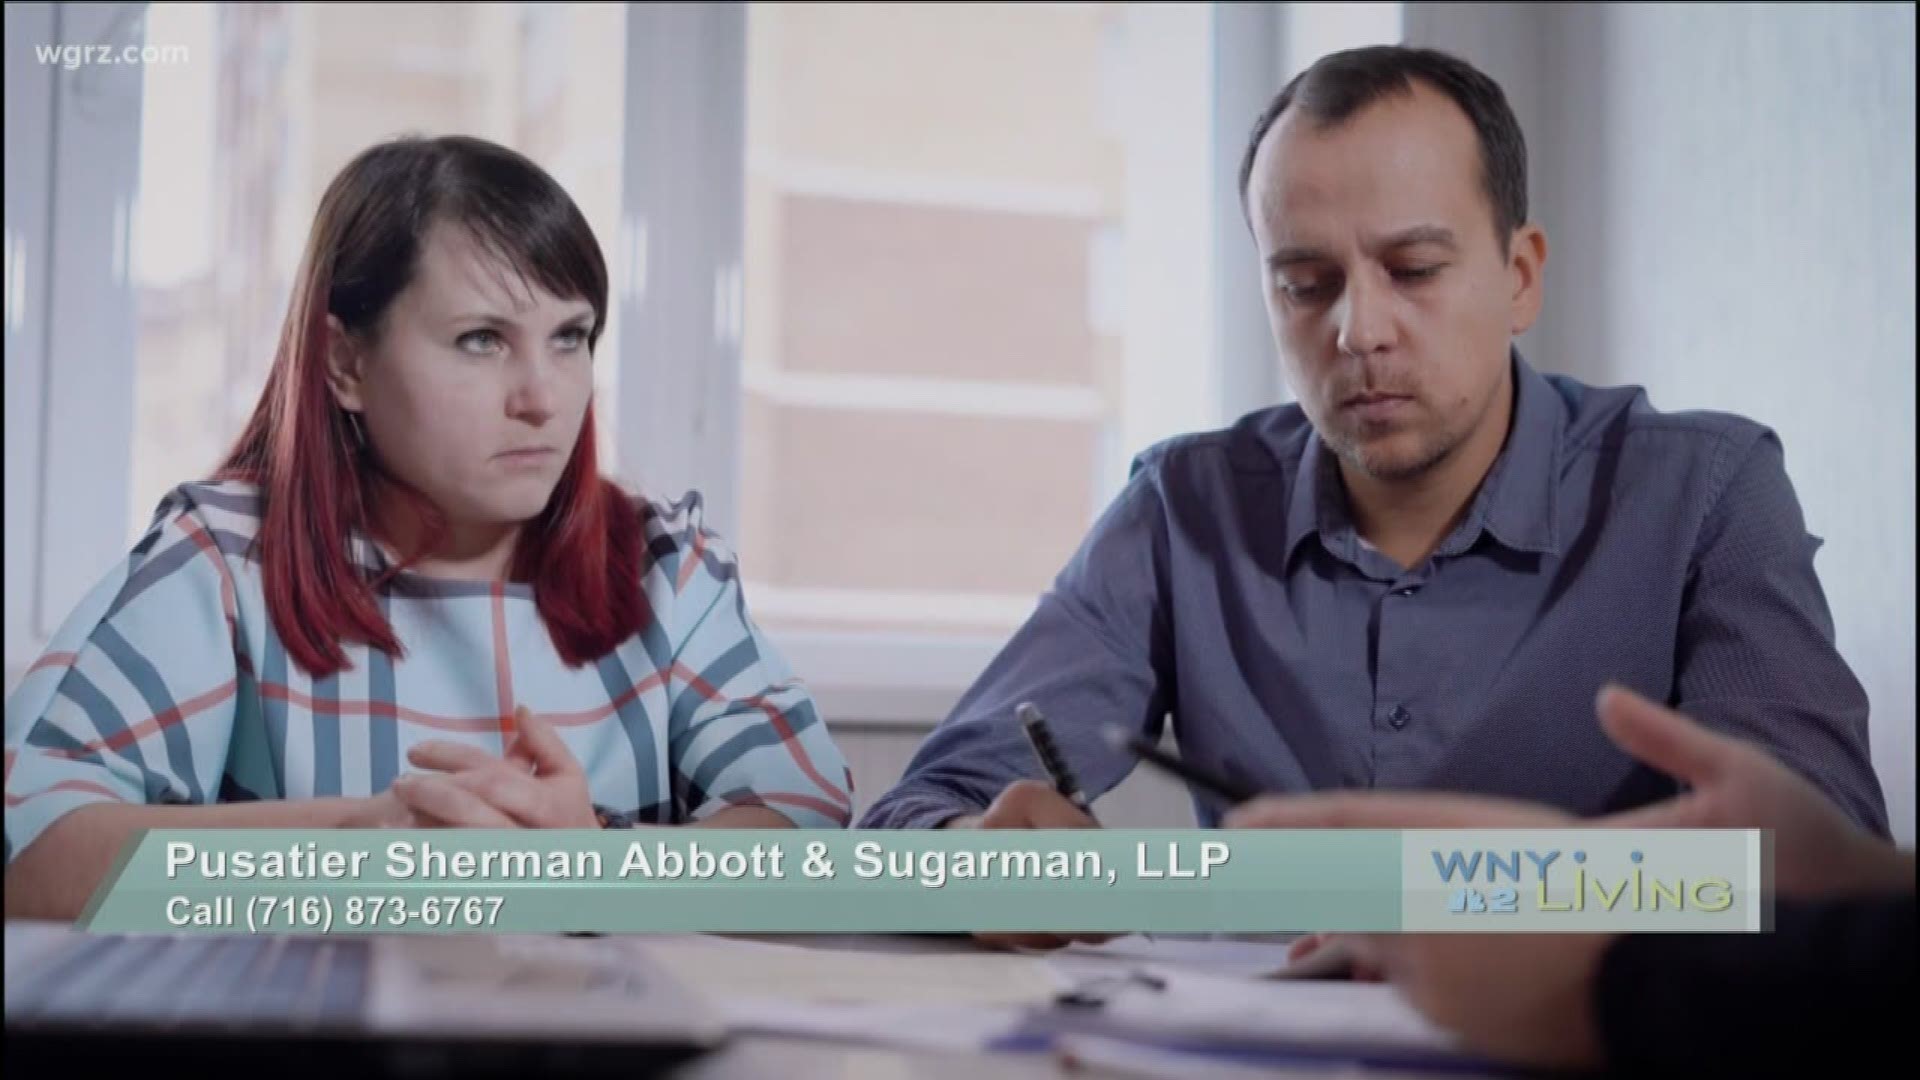 November 2 - Pusatier Sherman Abbott & Sugarman, LLP (THIS VIDEO IS SPONSORED BY PUSATIER SHERMAN ABBOTT & SUGARMAN, LLP)